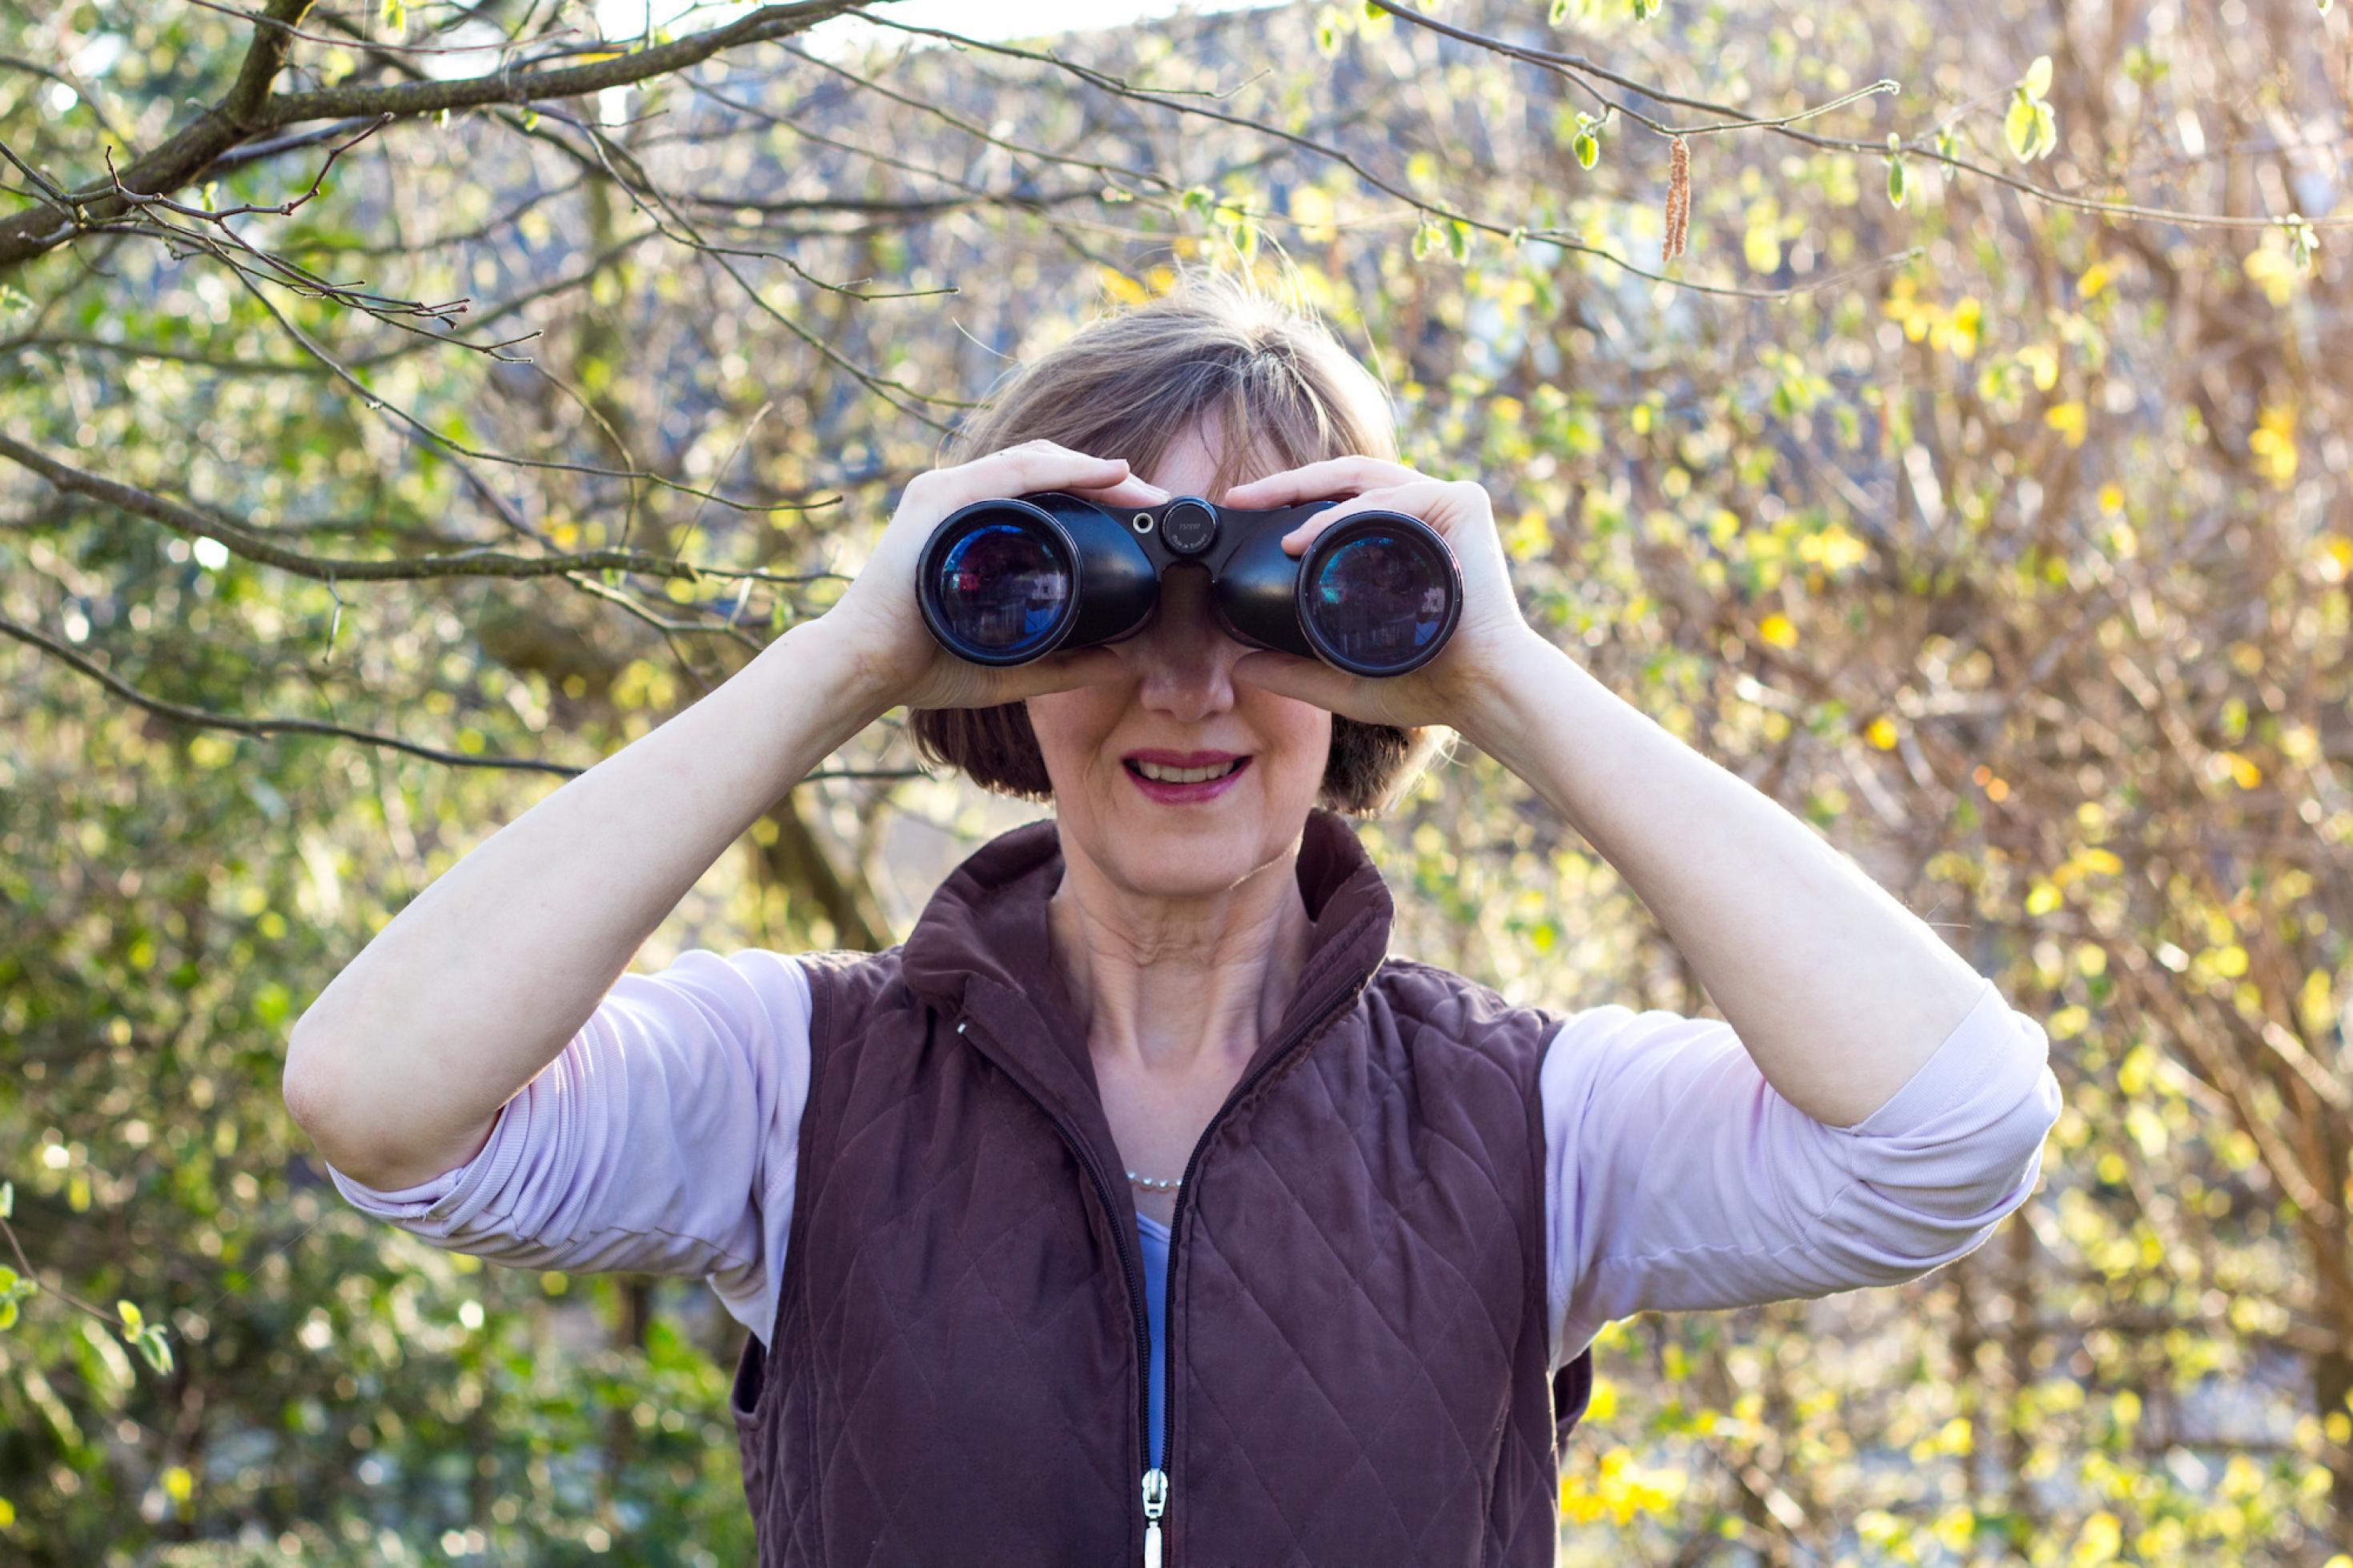 Die Umweltjournalistin Johanna Romberg ist Vogelbeobachterin, das Bild zeigt sie, während sie durch ein Fernglas blickt.